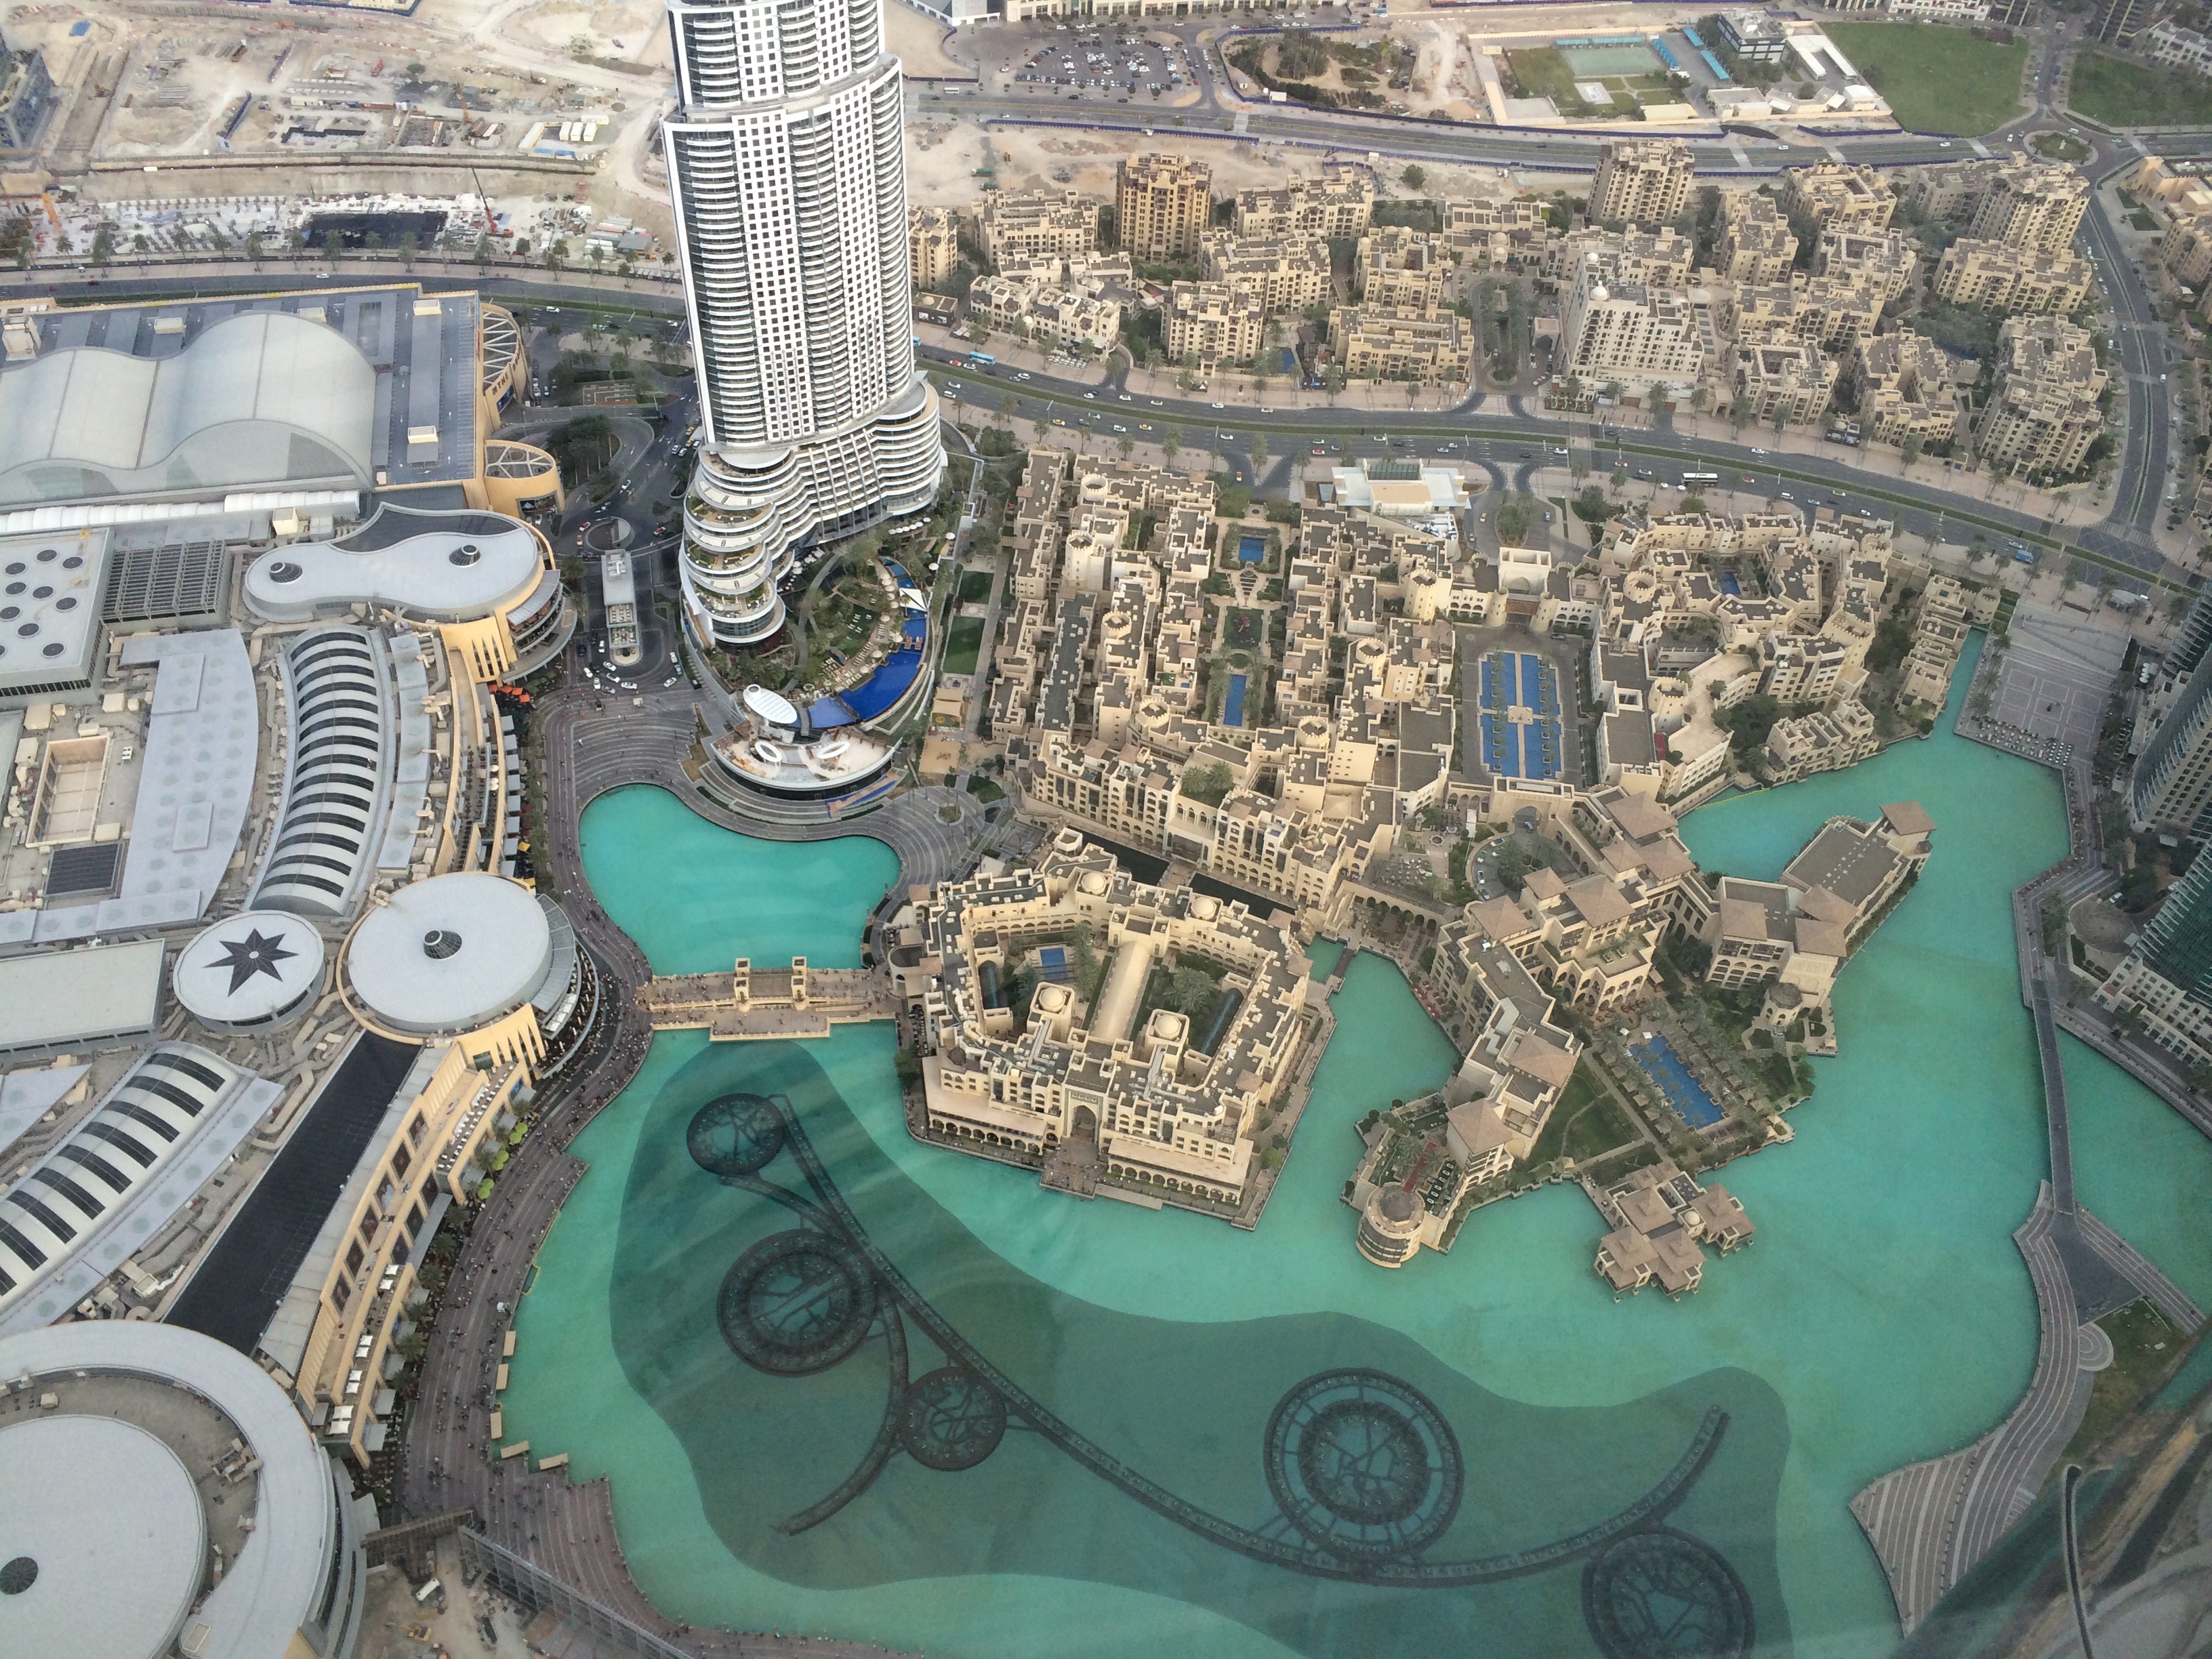 Peninsula Дубай. Музей будущего в Дубае. Погода дубай на 14 вода